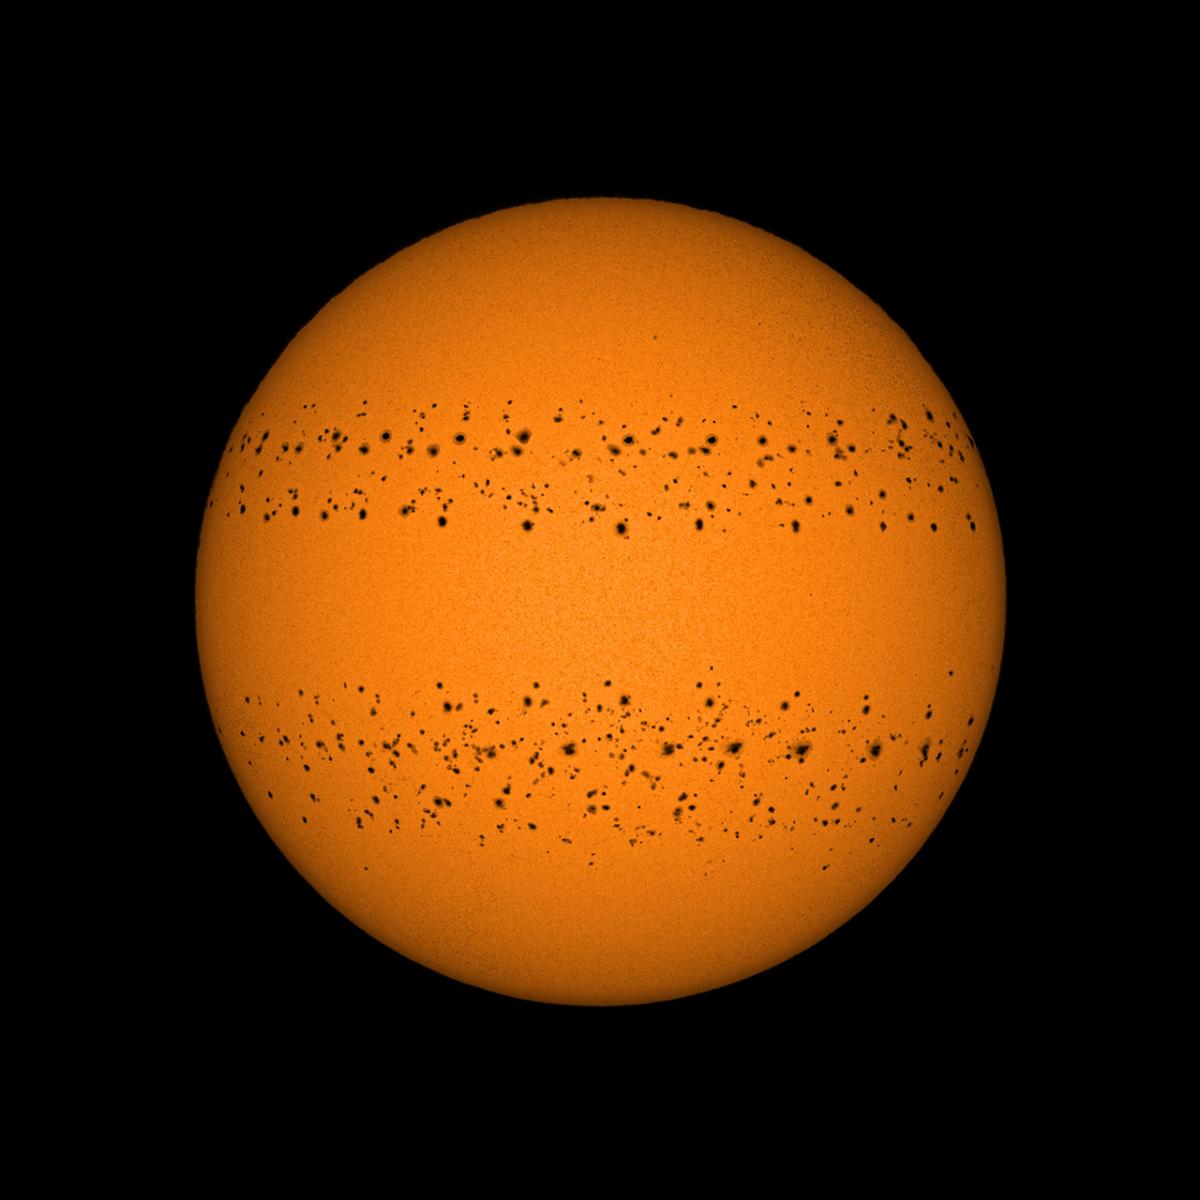 太阳图像由 365 张太阳图像组成，记录了太阳黑子在太阳上移动。